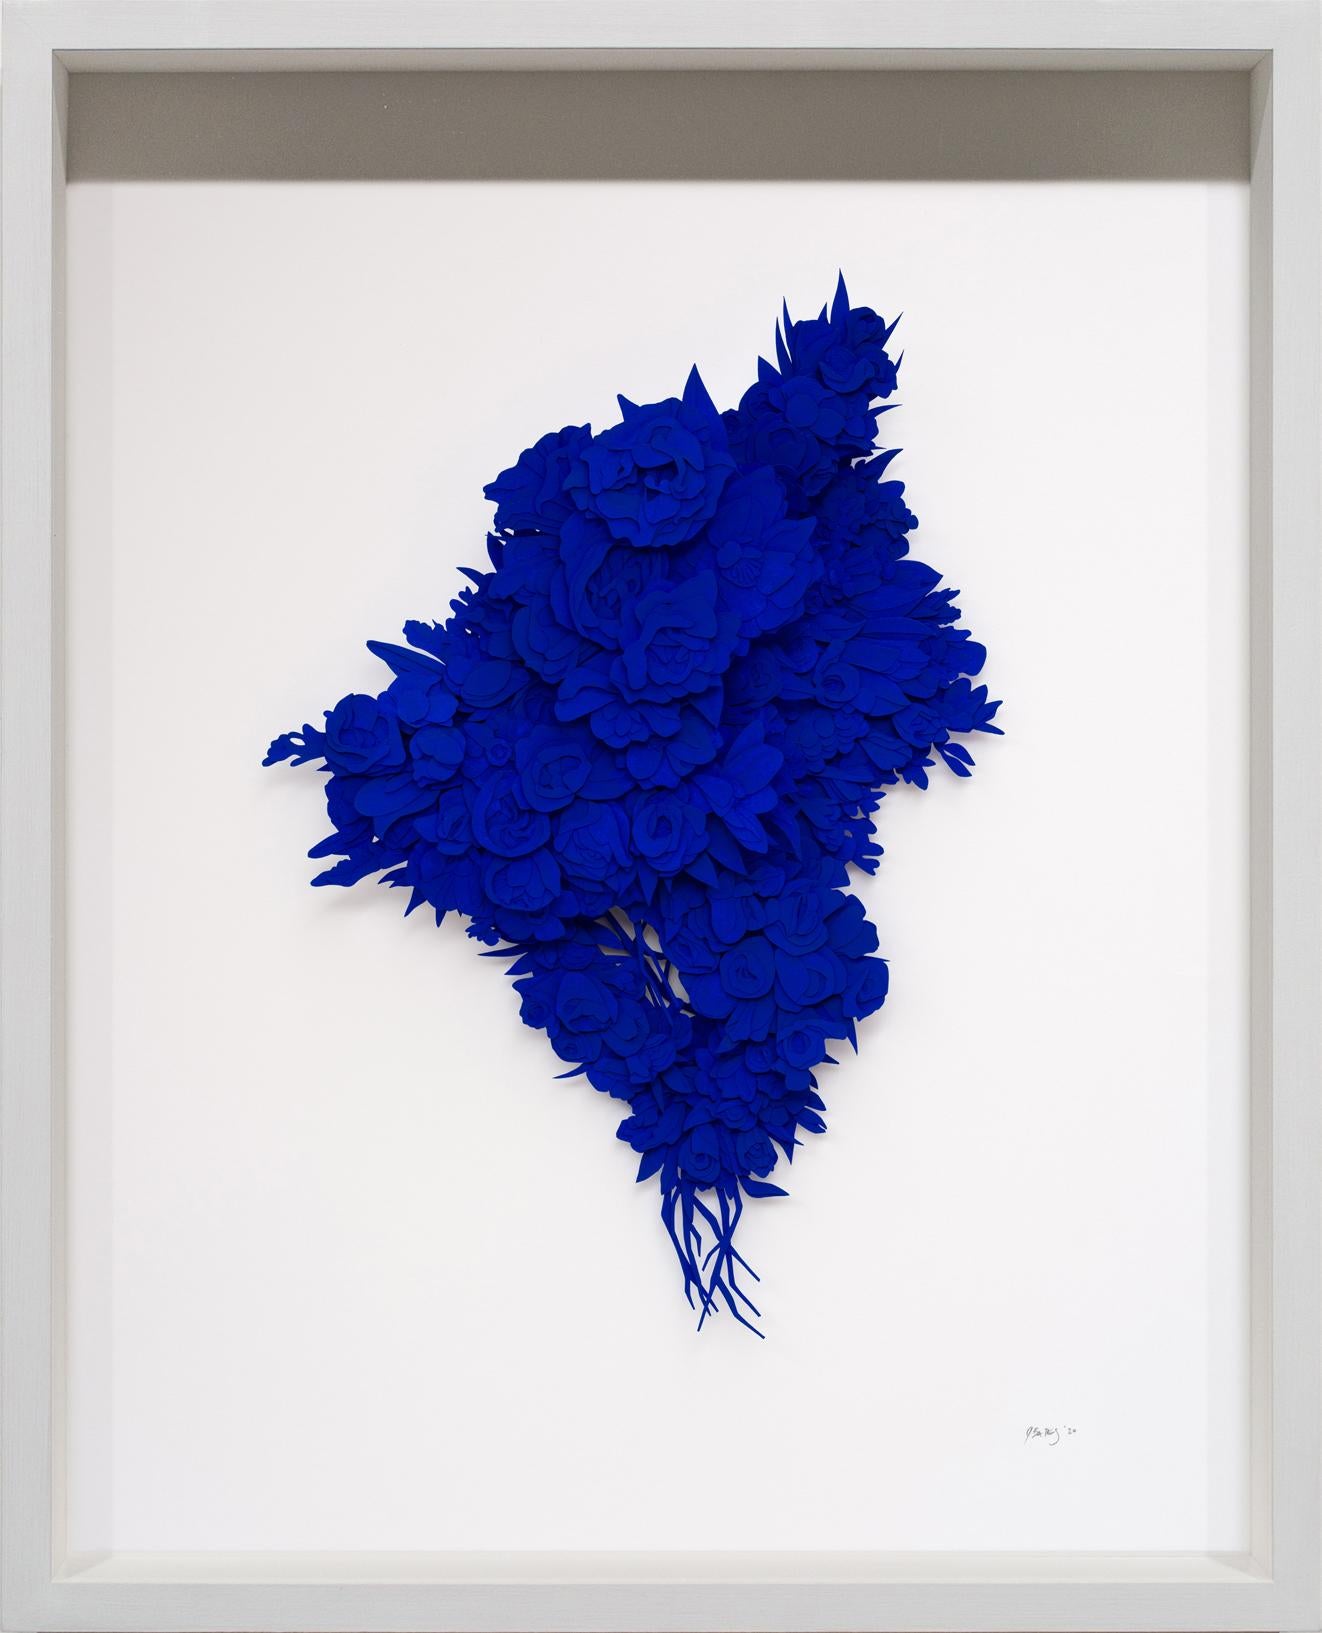 « Explosion #11 », sculpture de fleurs en papier taillé bleu cobalt, œuvre d'art florale